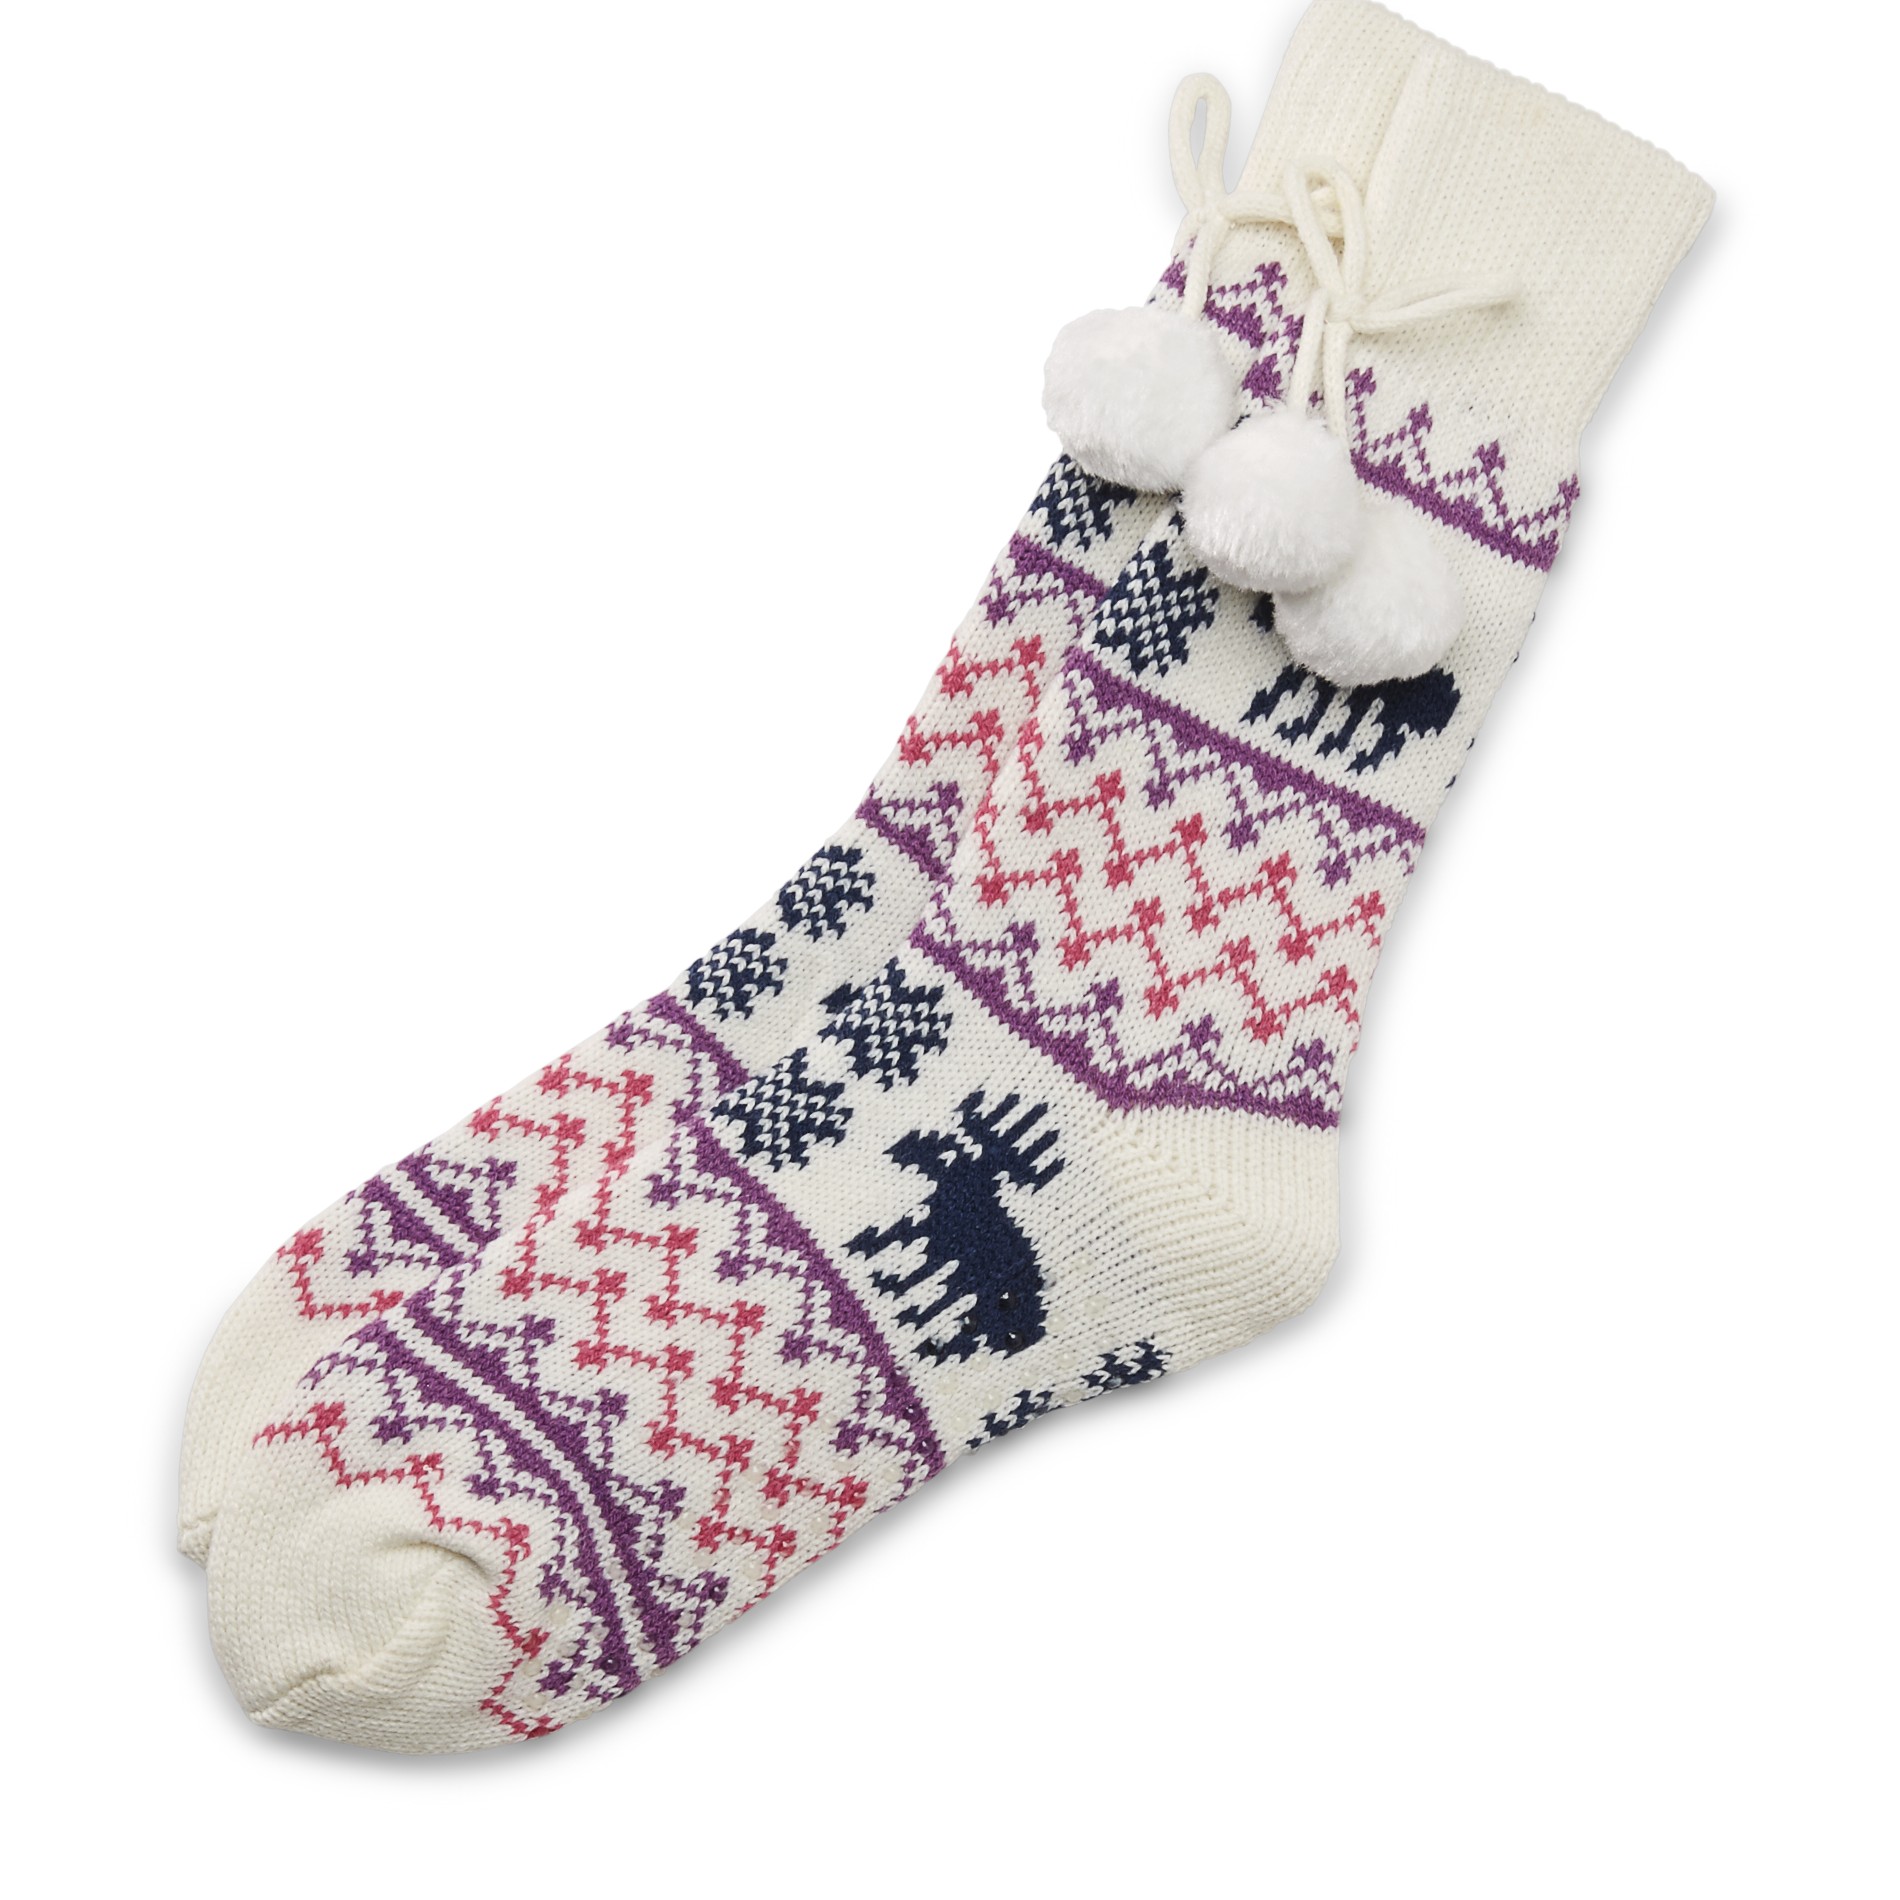 Joe Boxer Women's Pompom Slipper Socks - Moose